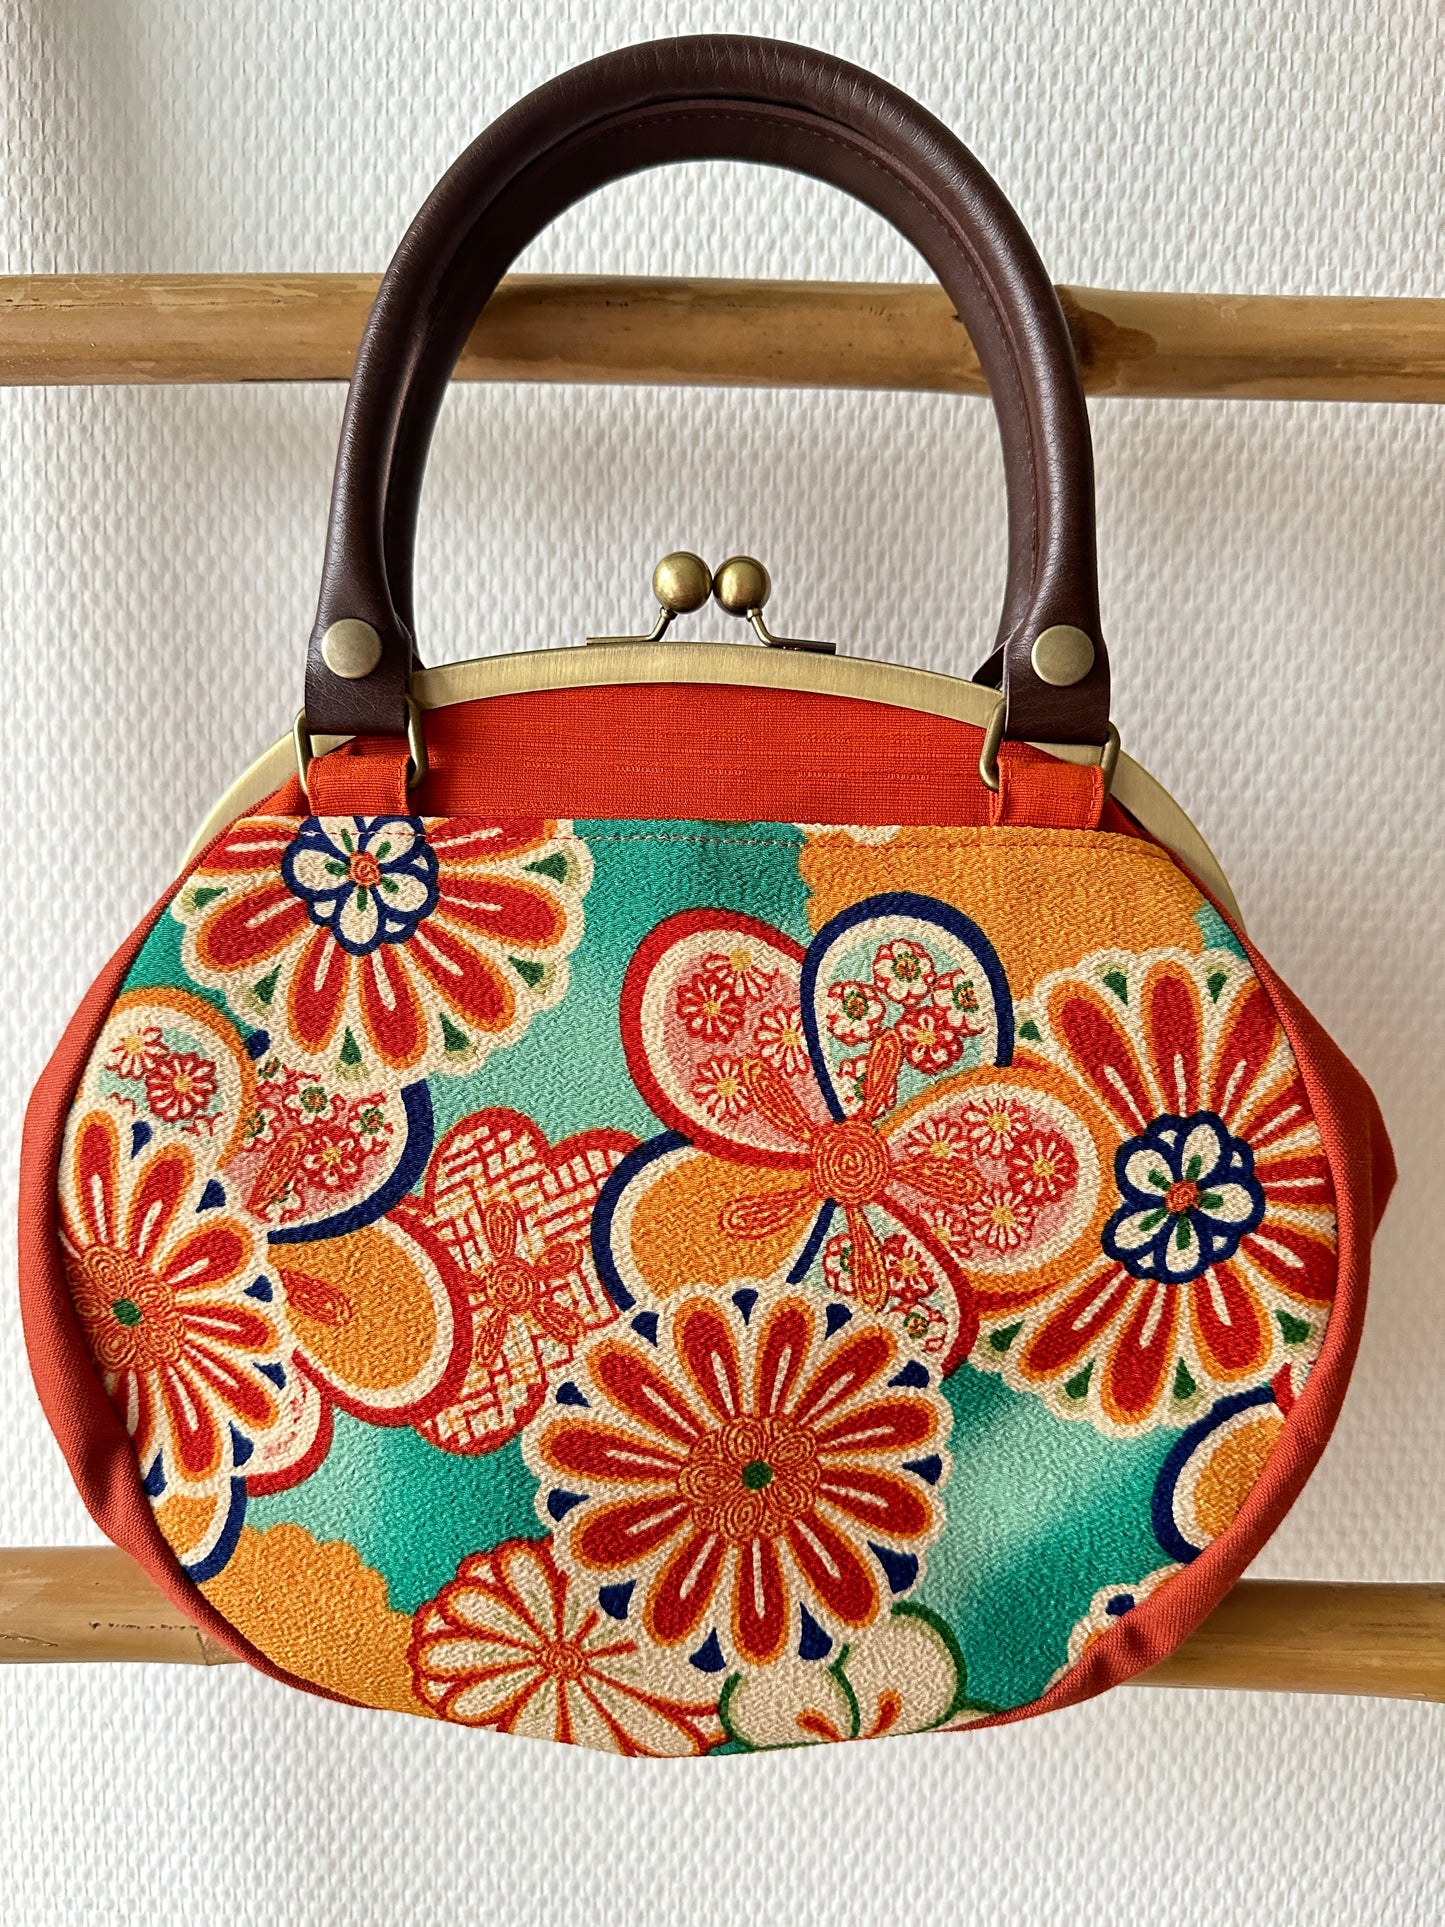 【Orange/Blumen】 Gamaguchi-en/Handtasche, Clutch, Beutel, japanische Tasche, Umhängetasche, japanische Geschenke